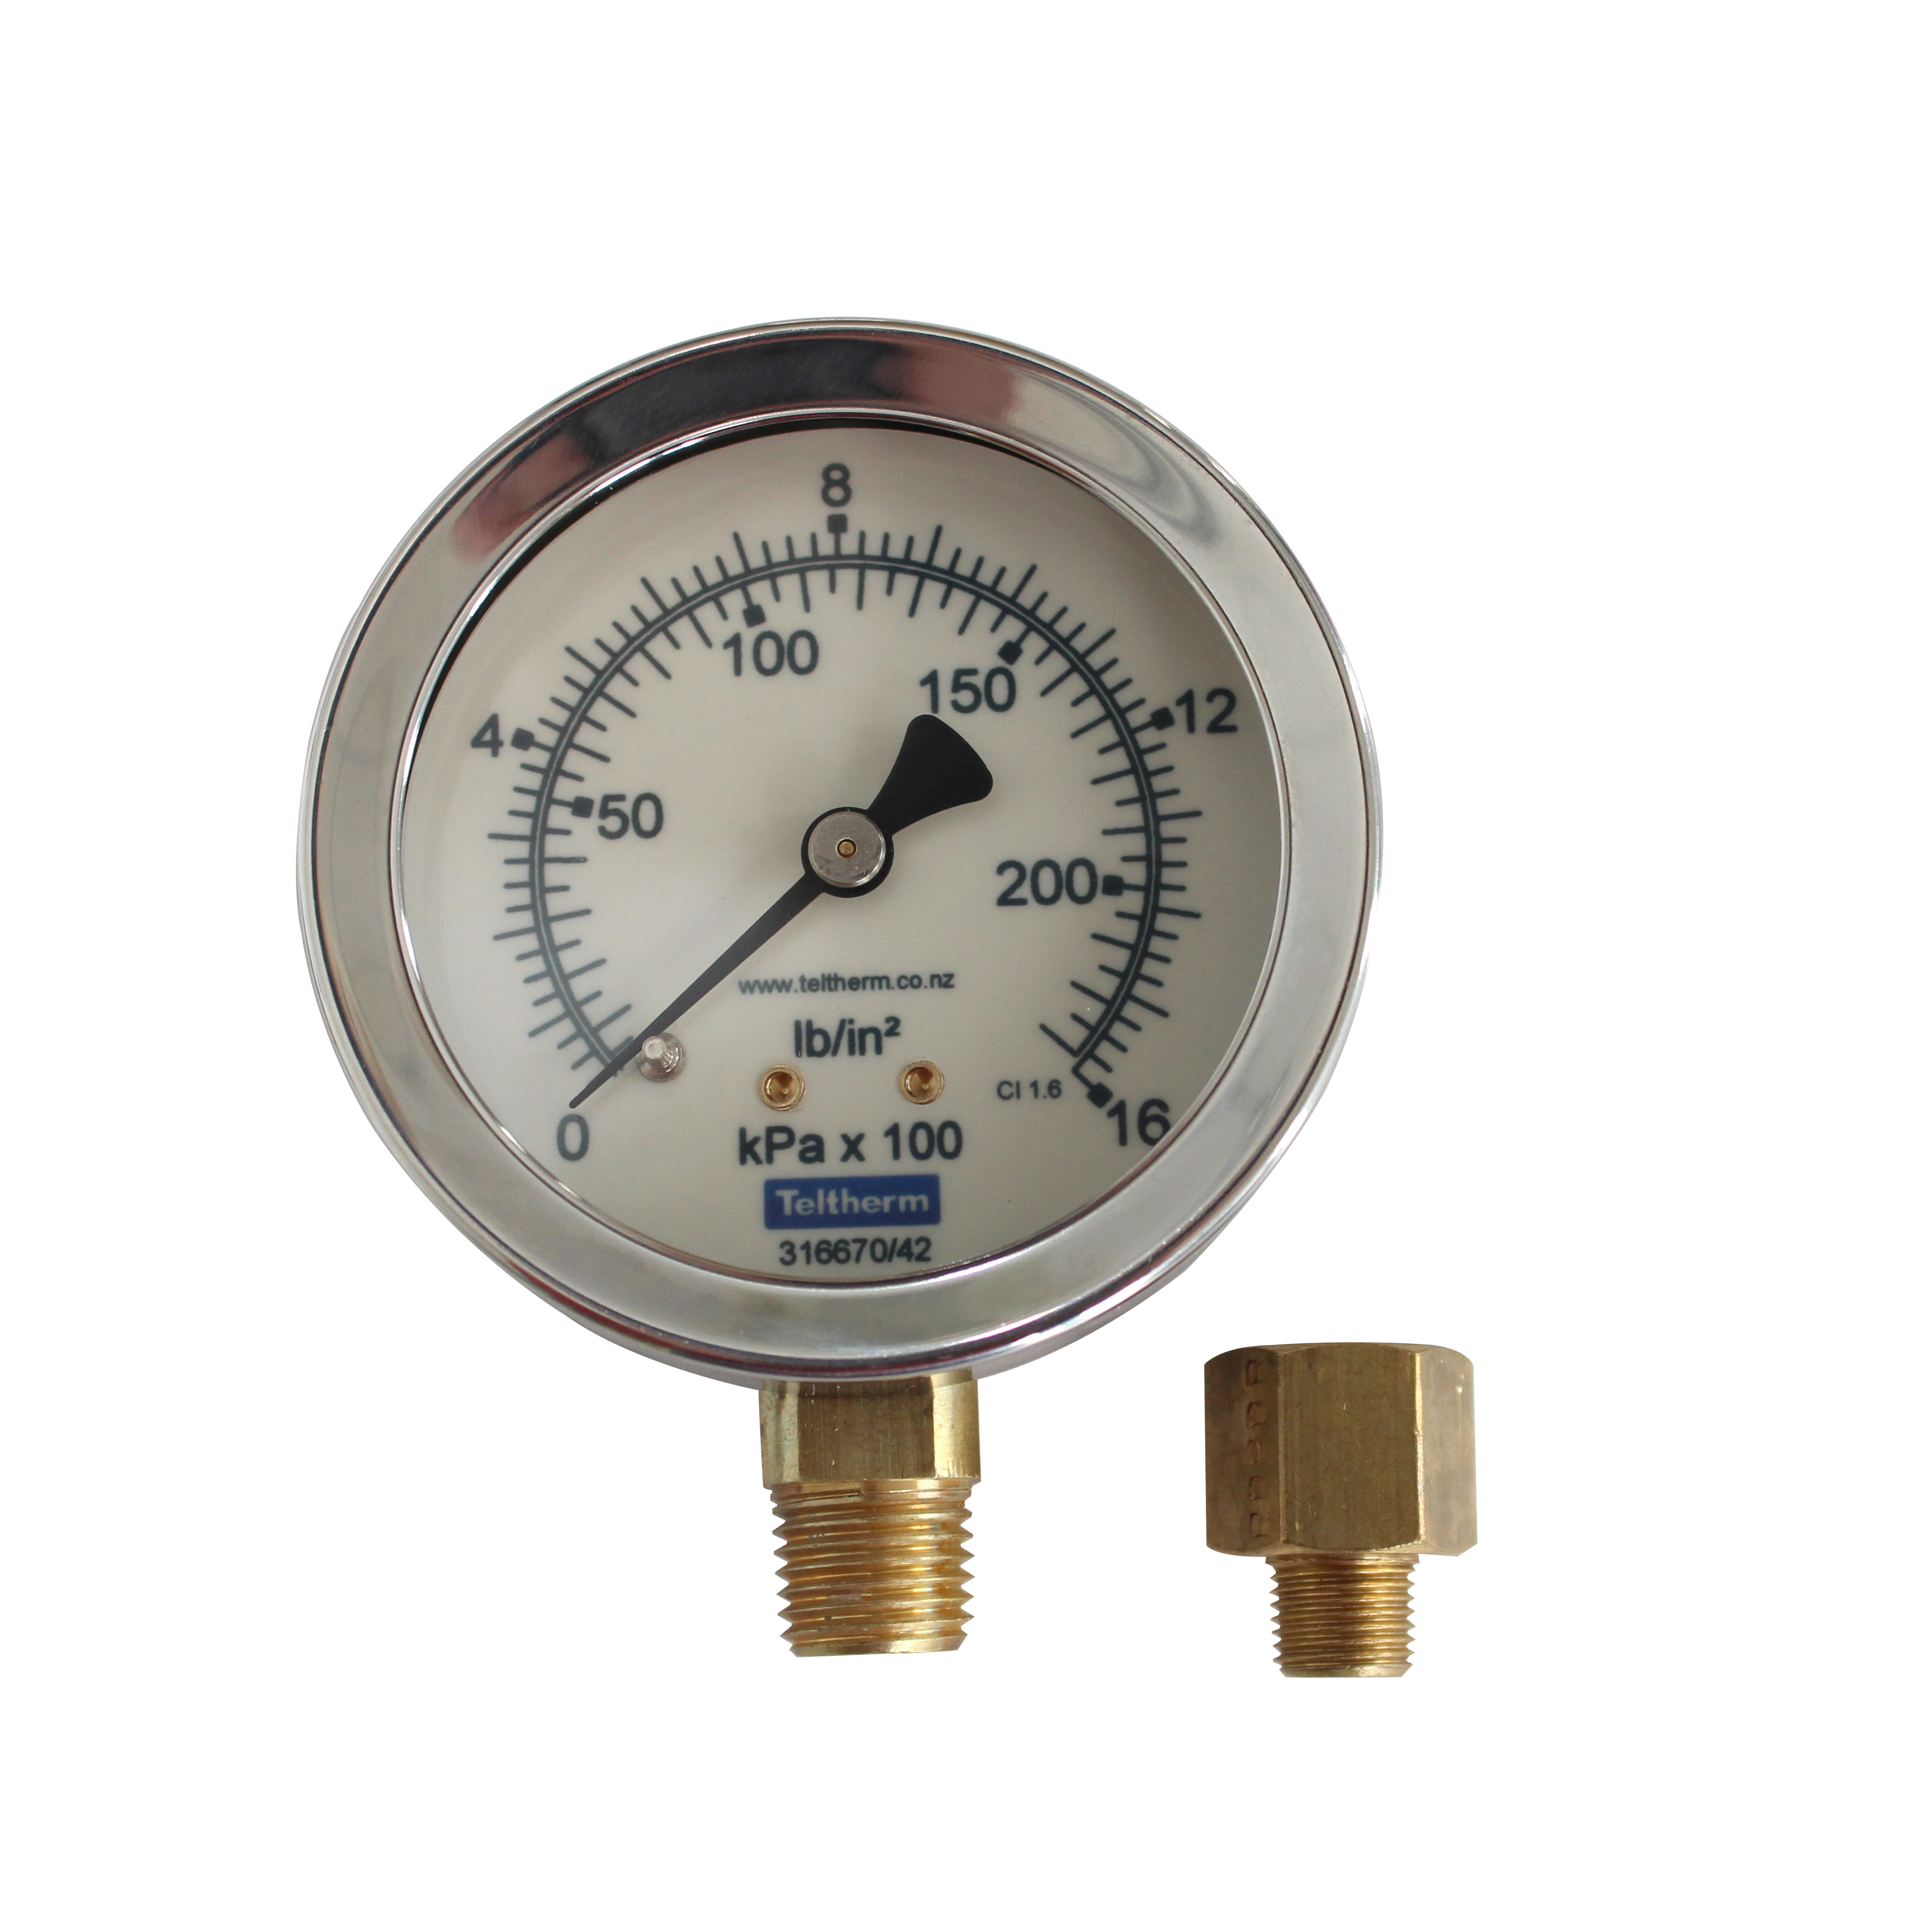 Diesel Burner Pressure Gauge Kit image